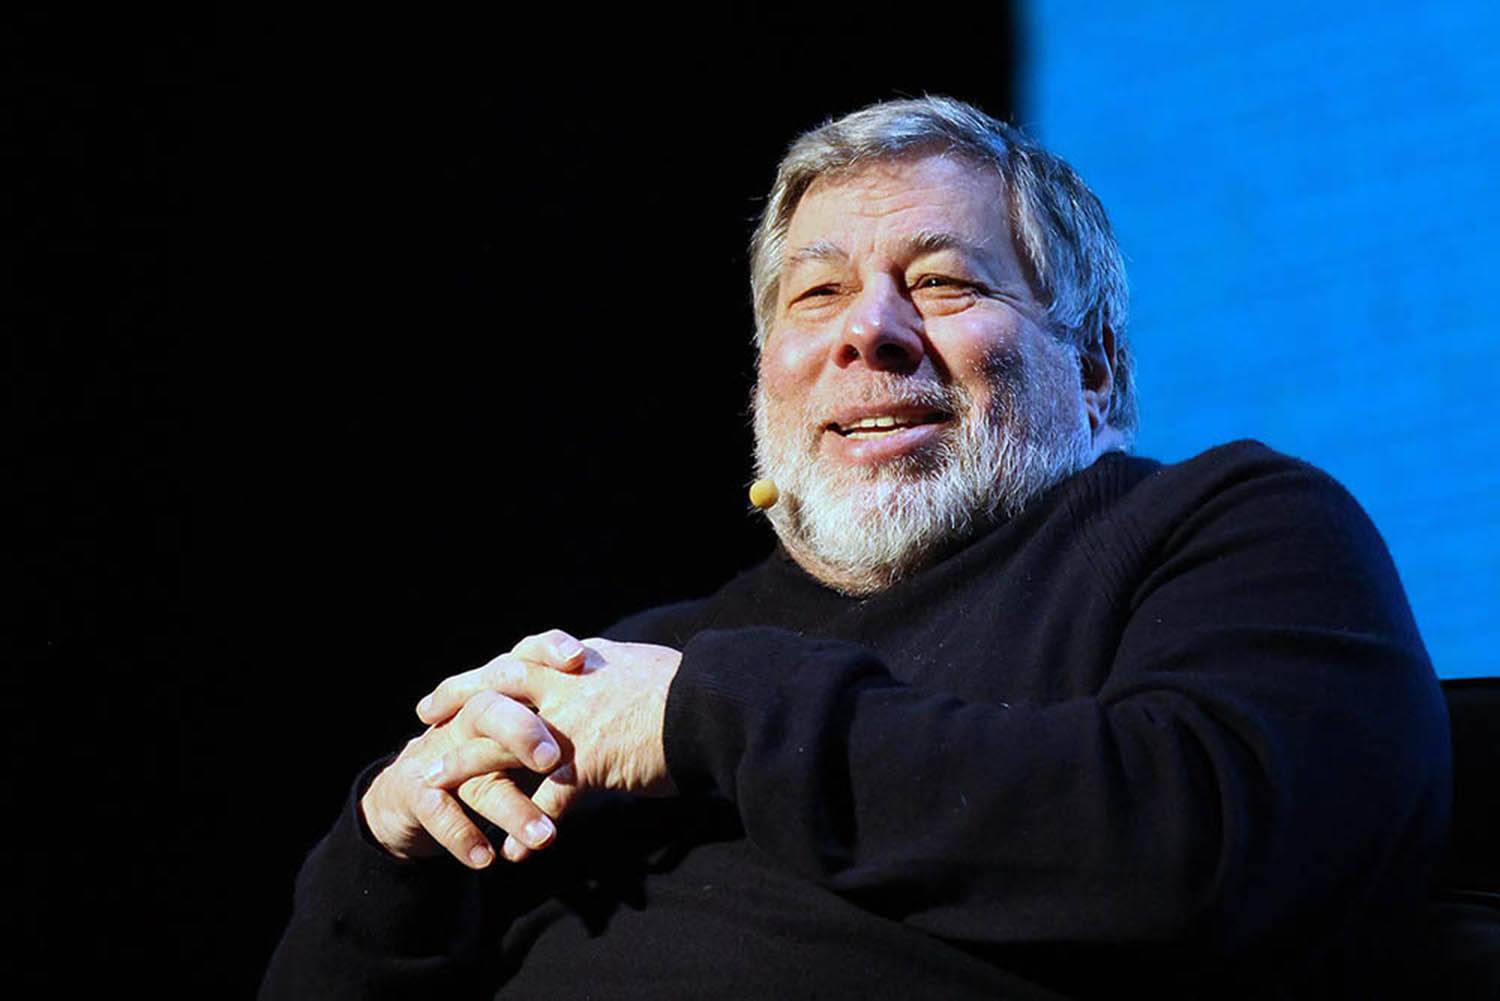 Stevewozniak Hand Gesture - Steve Wozniak Handgest Går Att Ladda Ner Som Datorskärm Eller Mobil Bakgrundsbild. Wallpaper